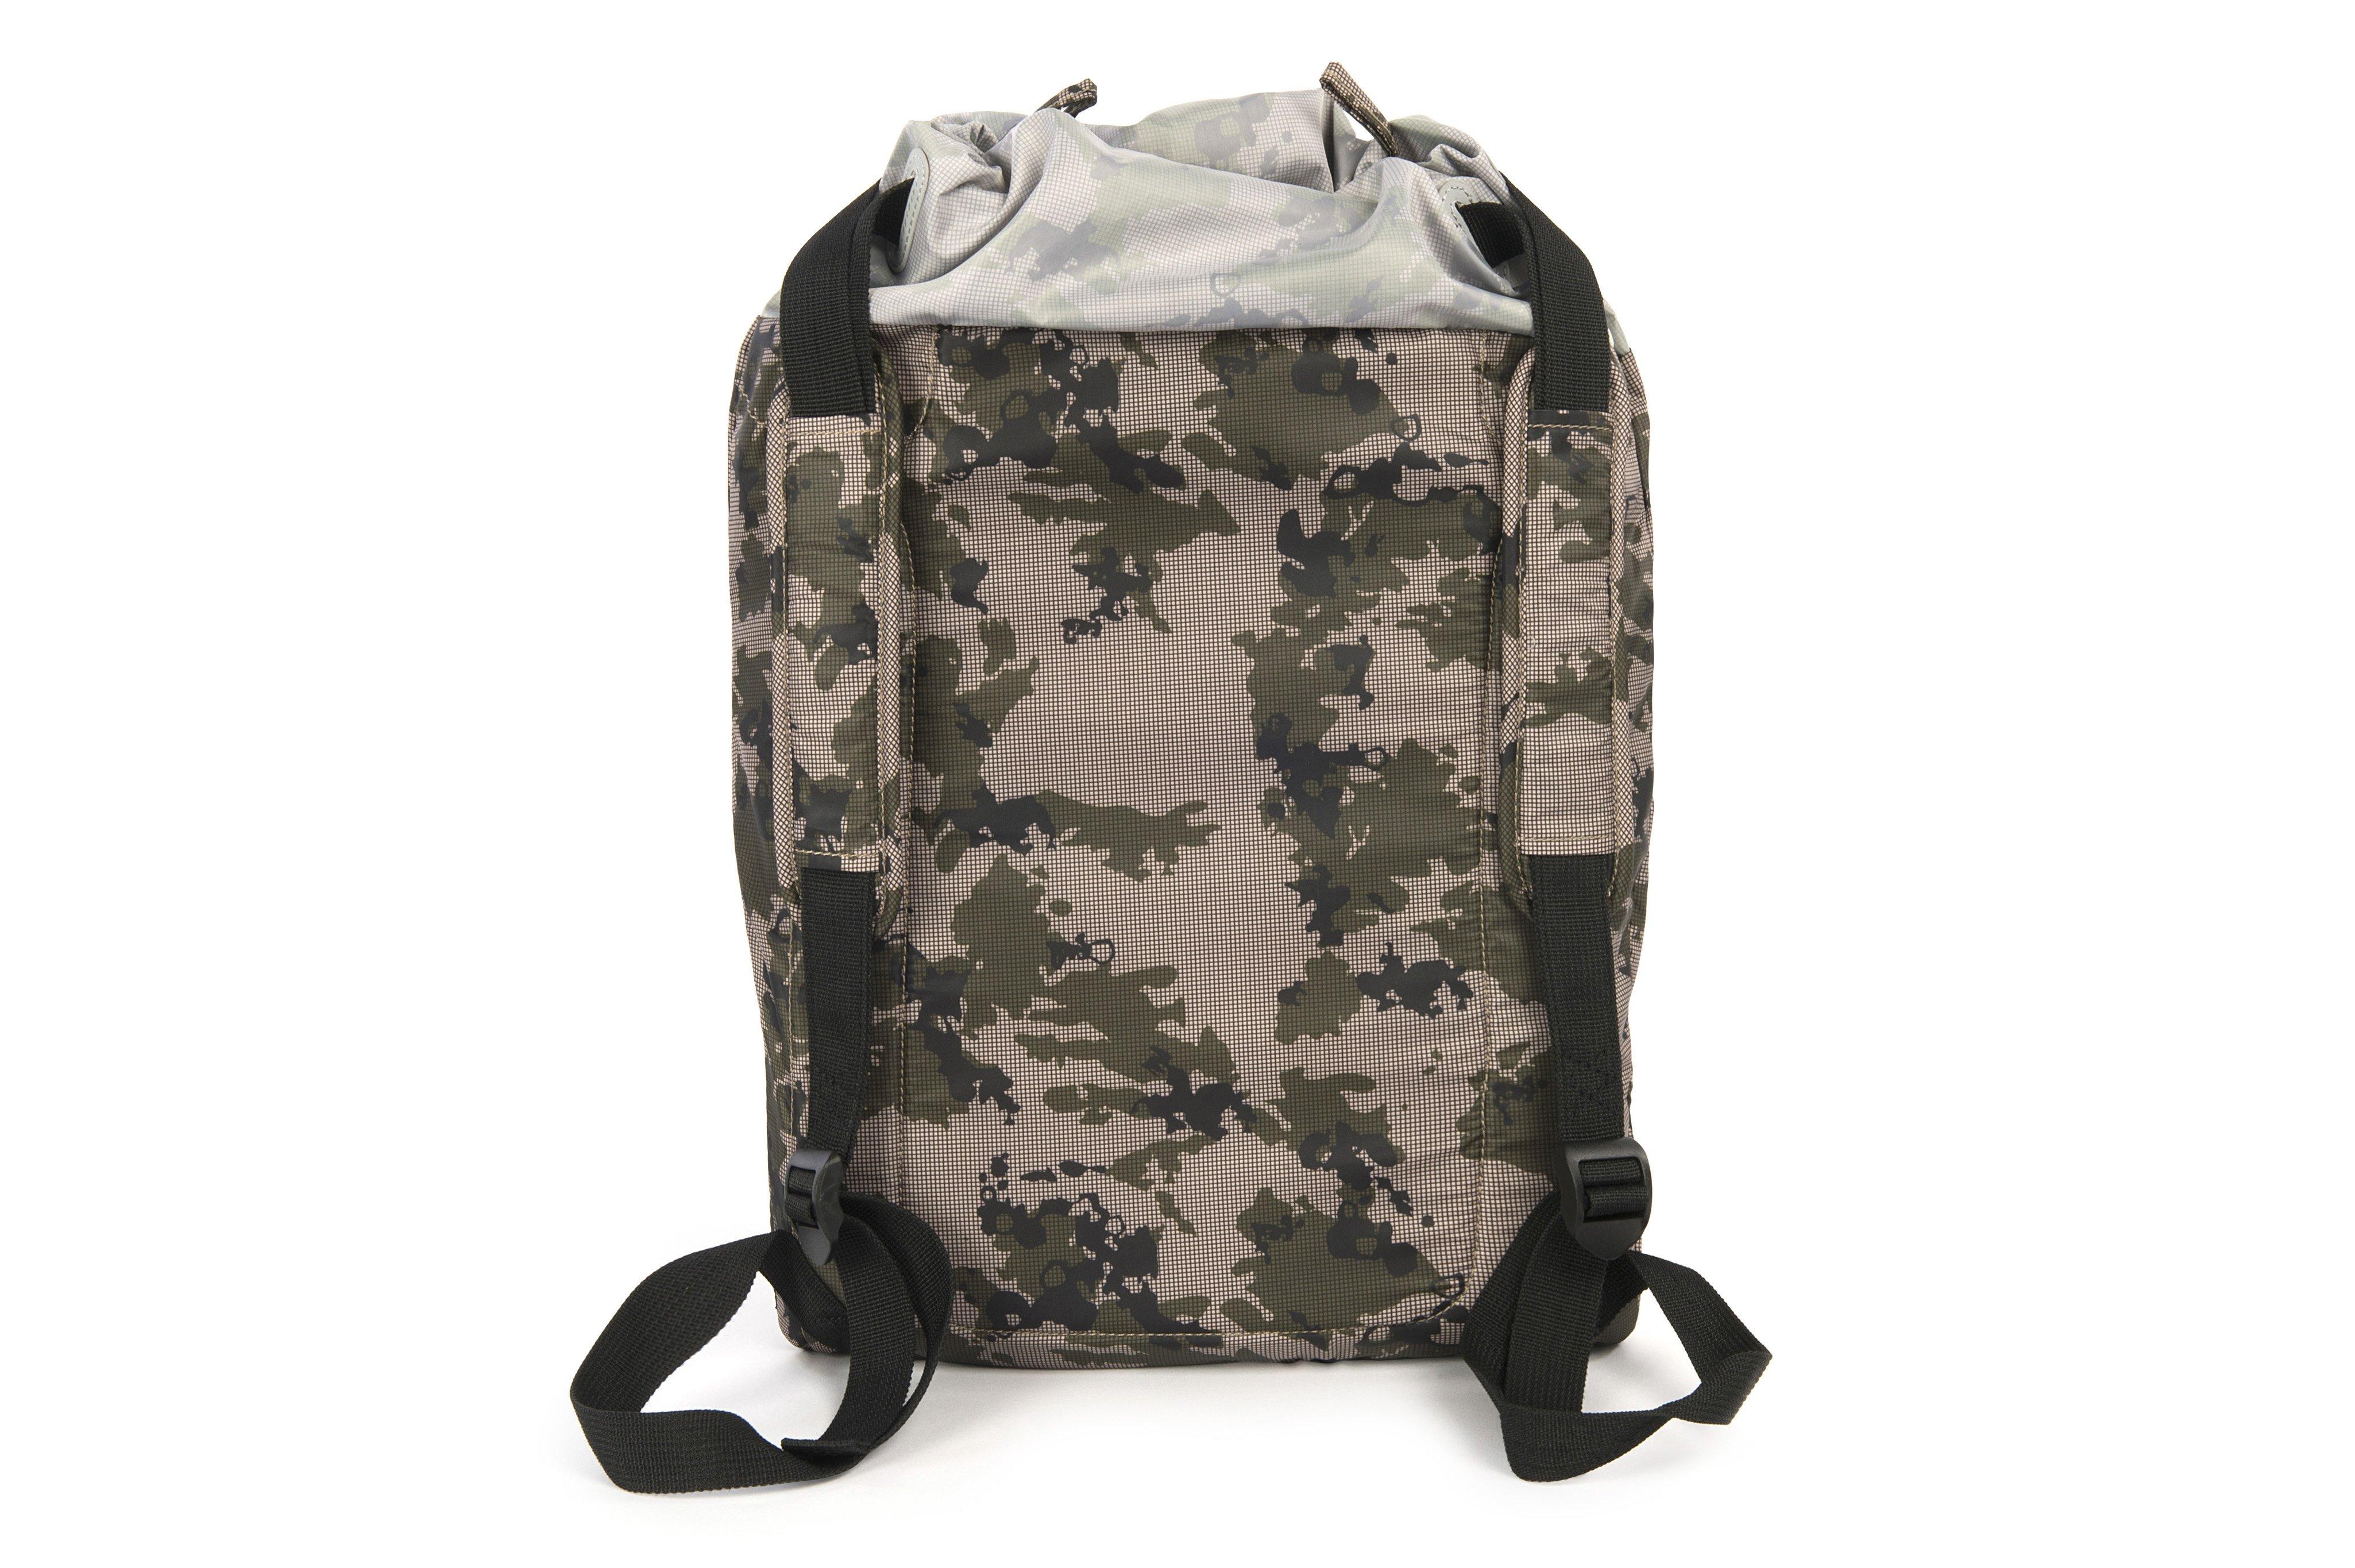 TUCANO  Fluido Bag Camouflage 15.4/15.6 